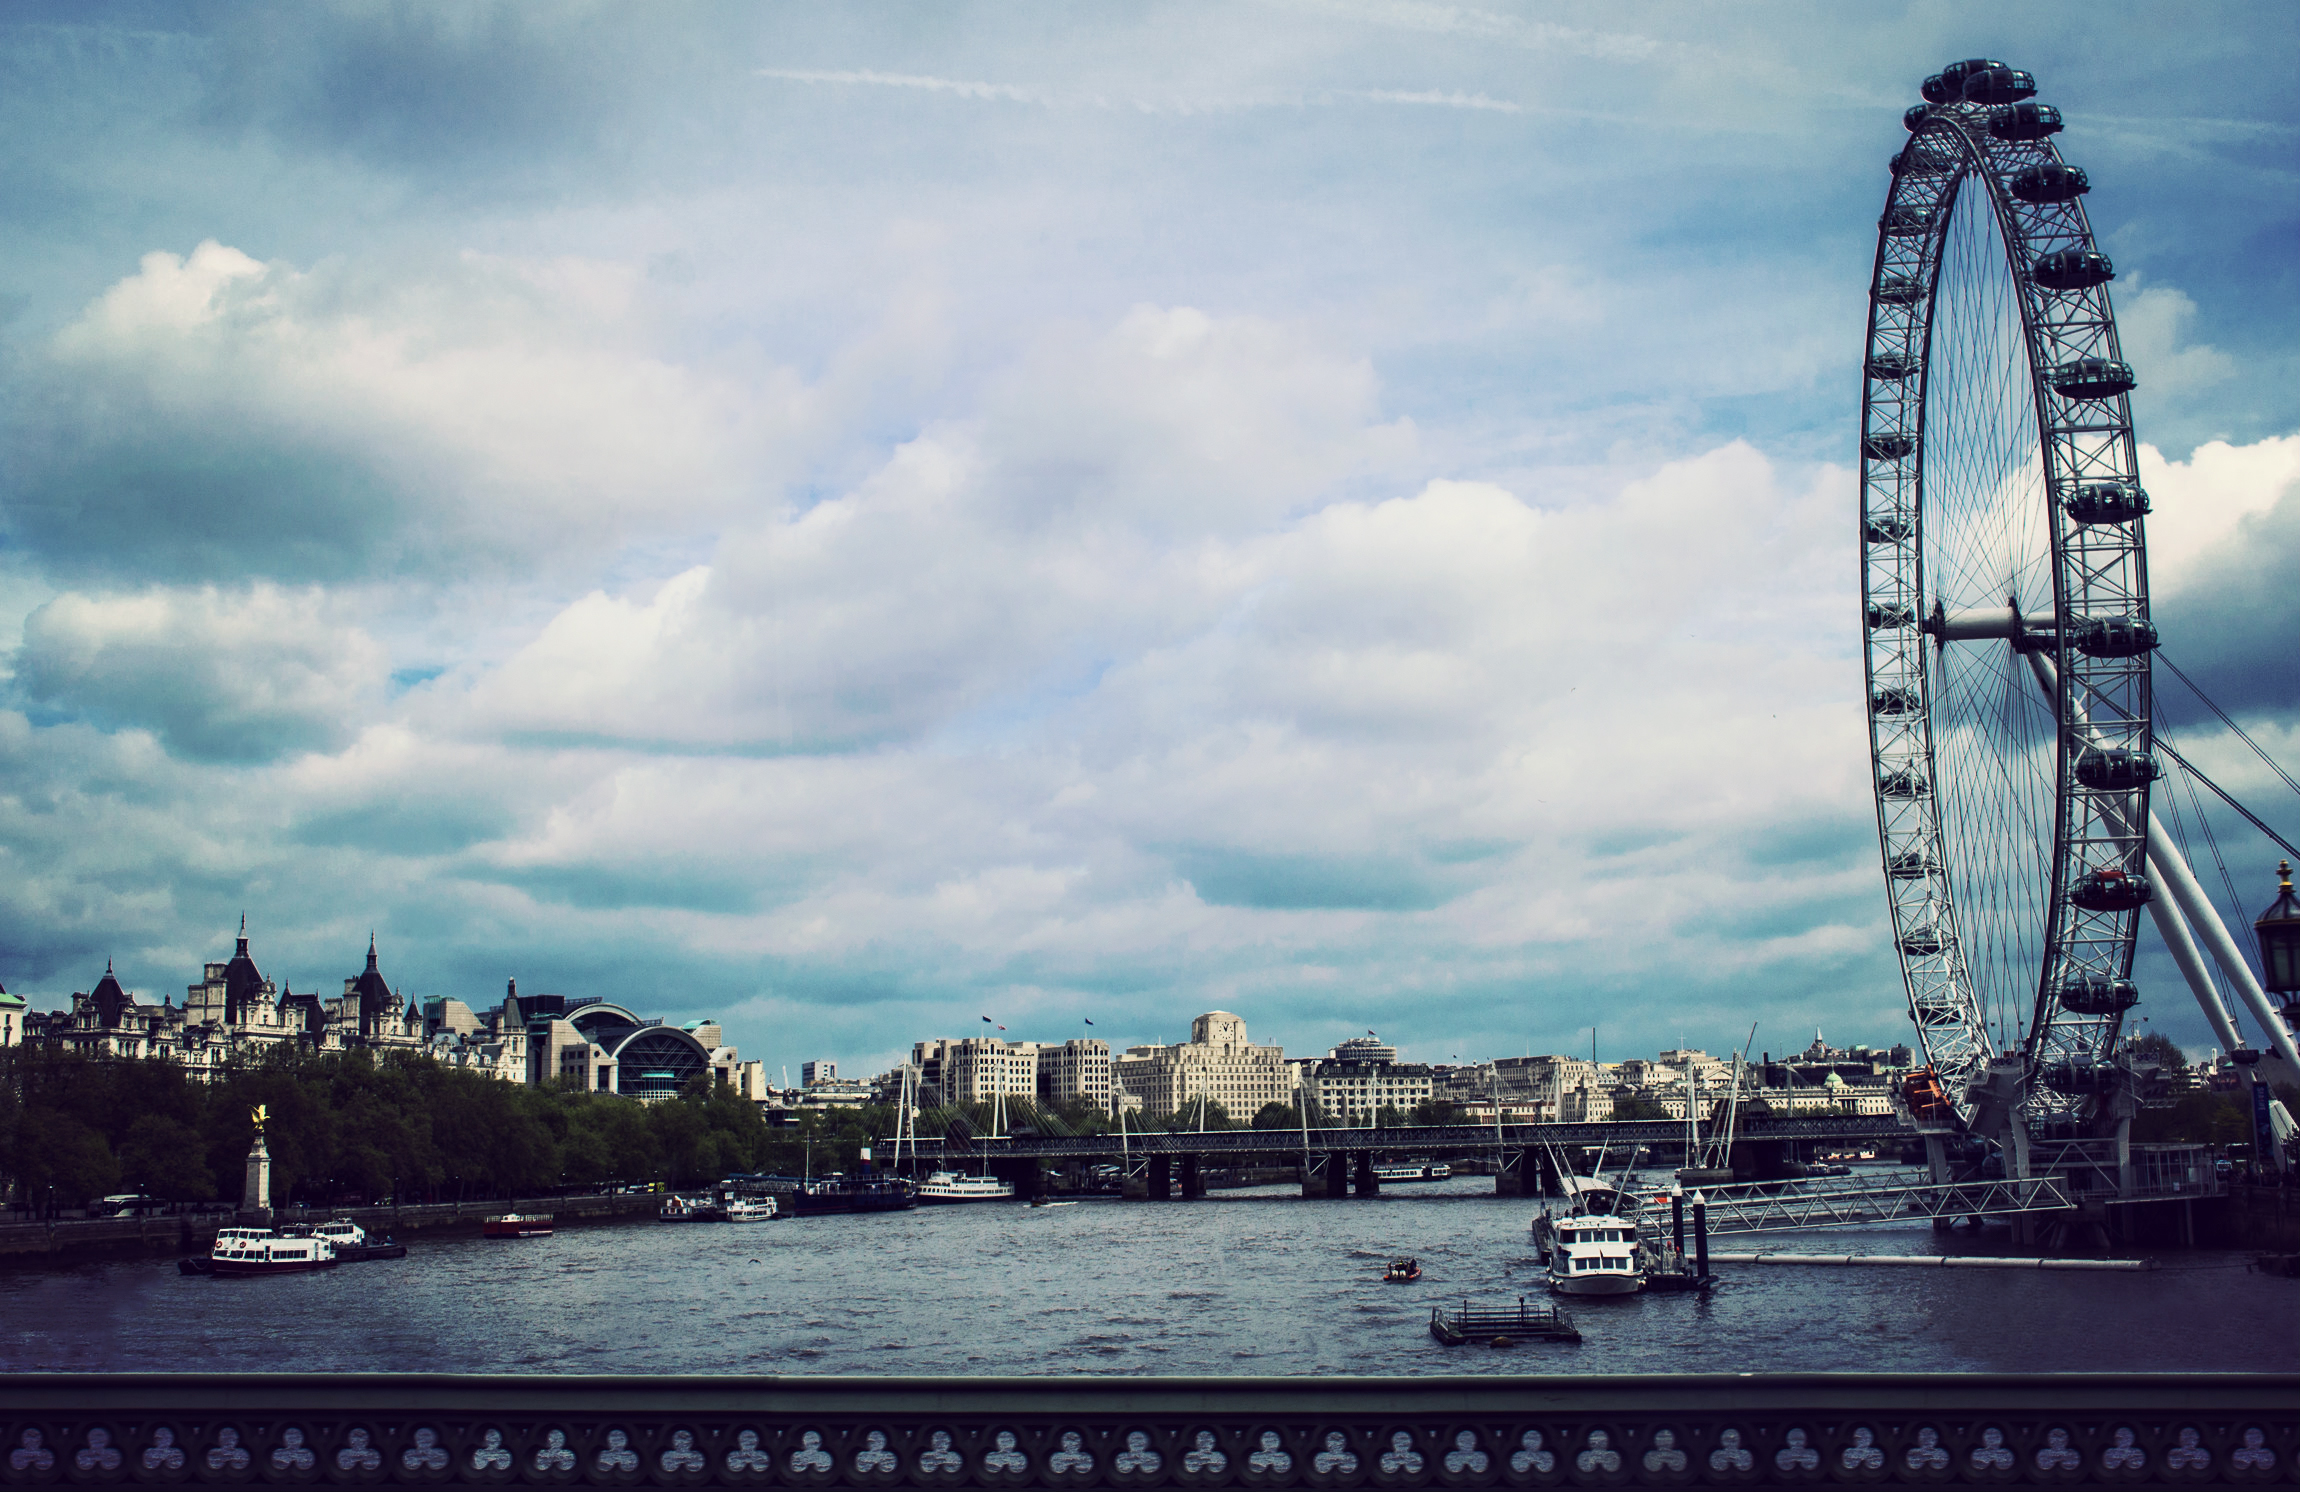 Hd Wallpaper - London Eye , HD Wallpaper & Backgrounds